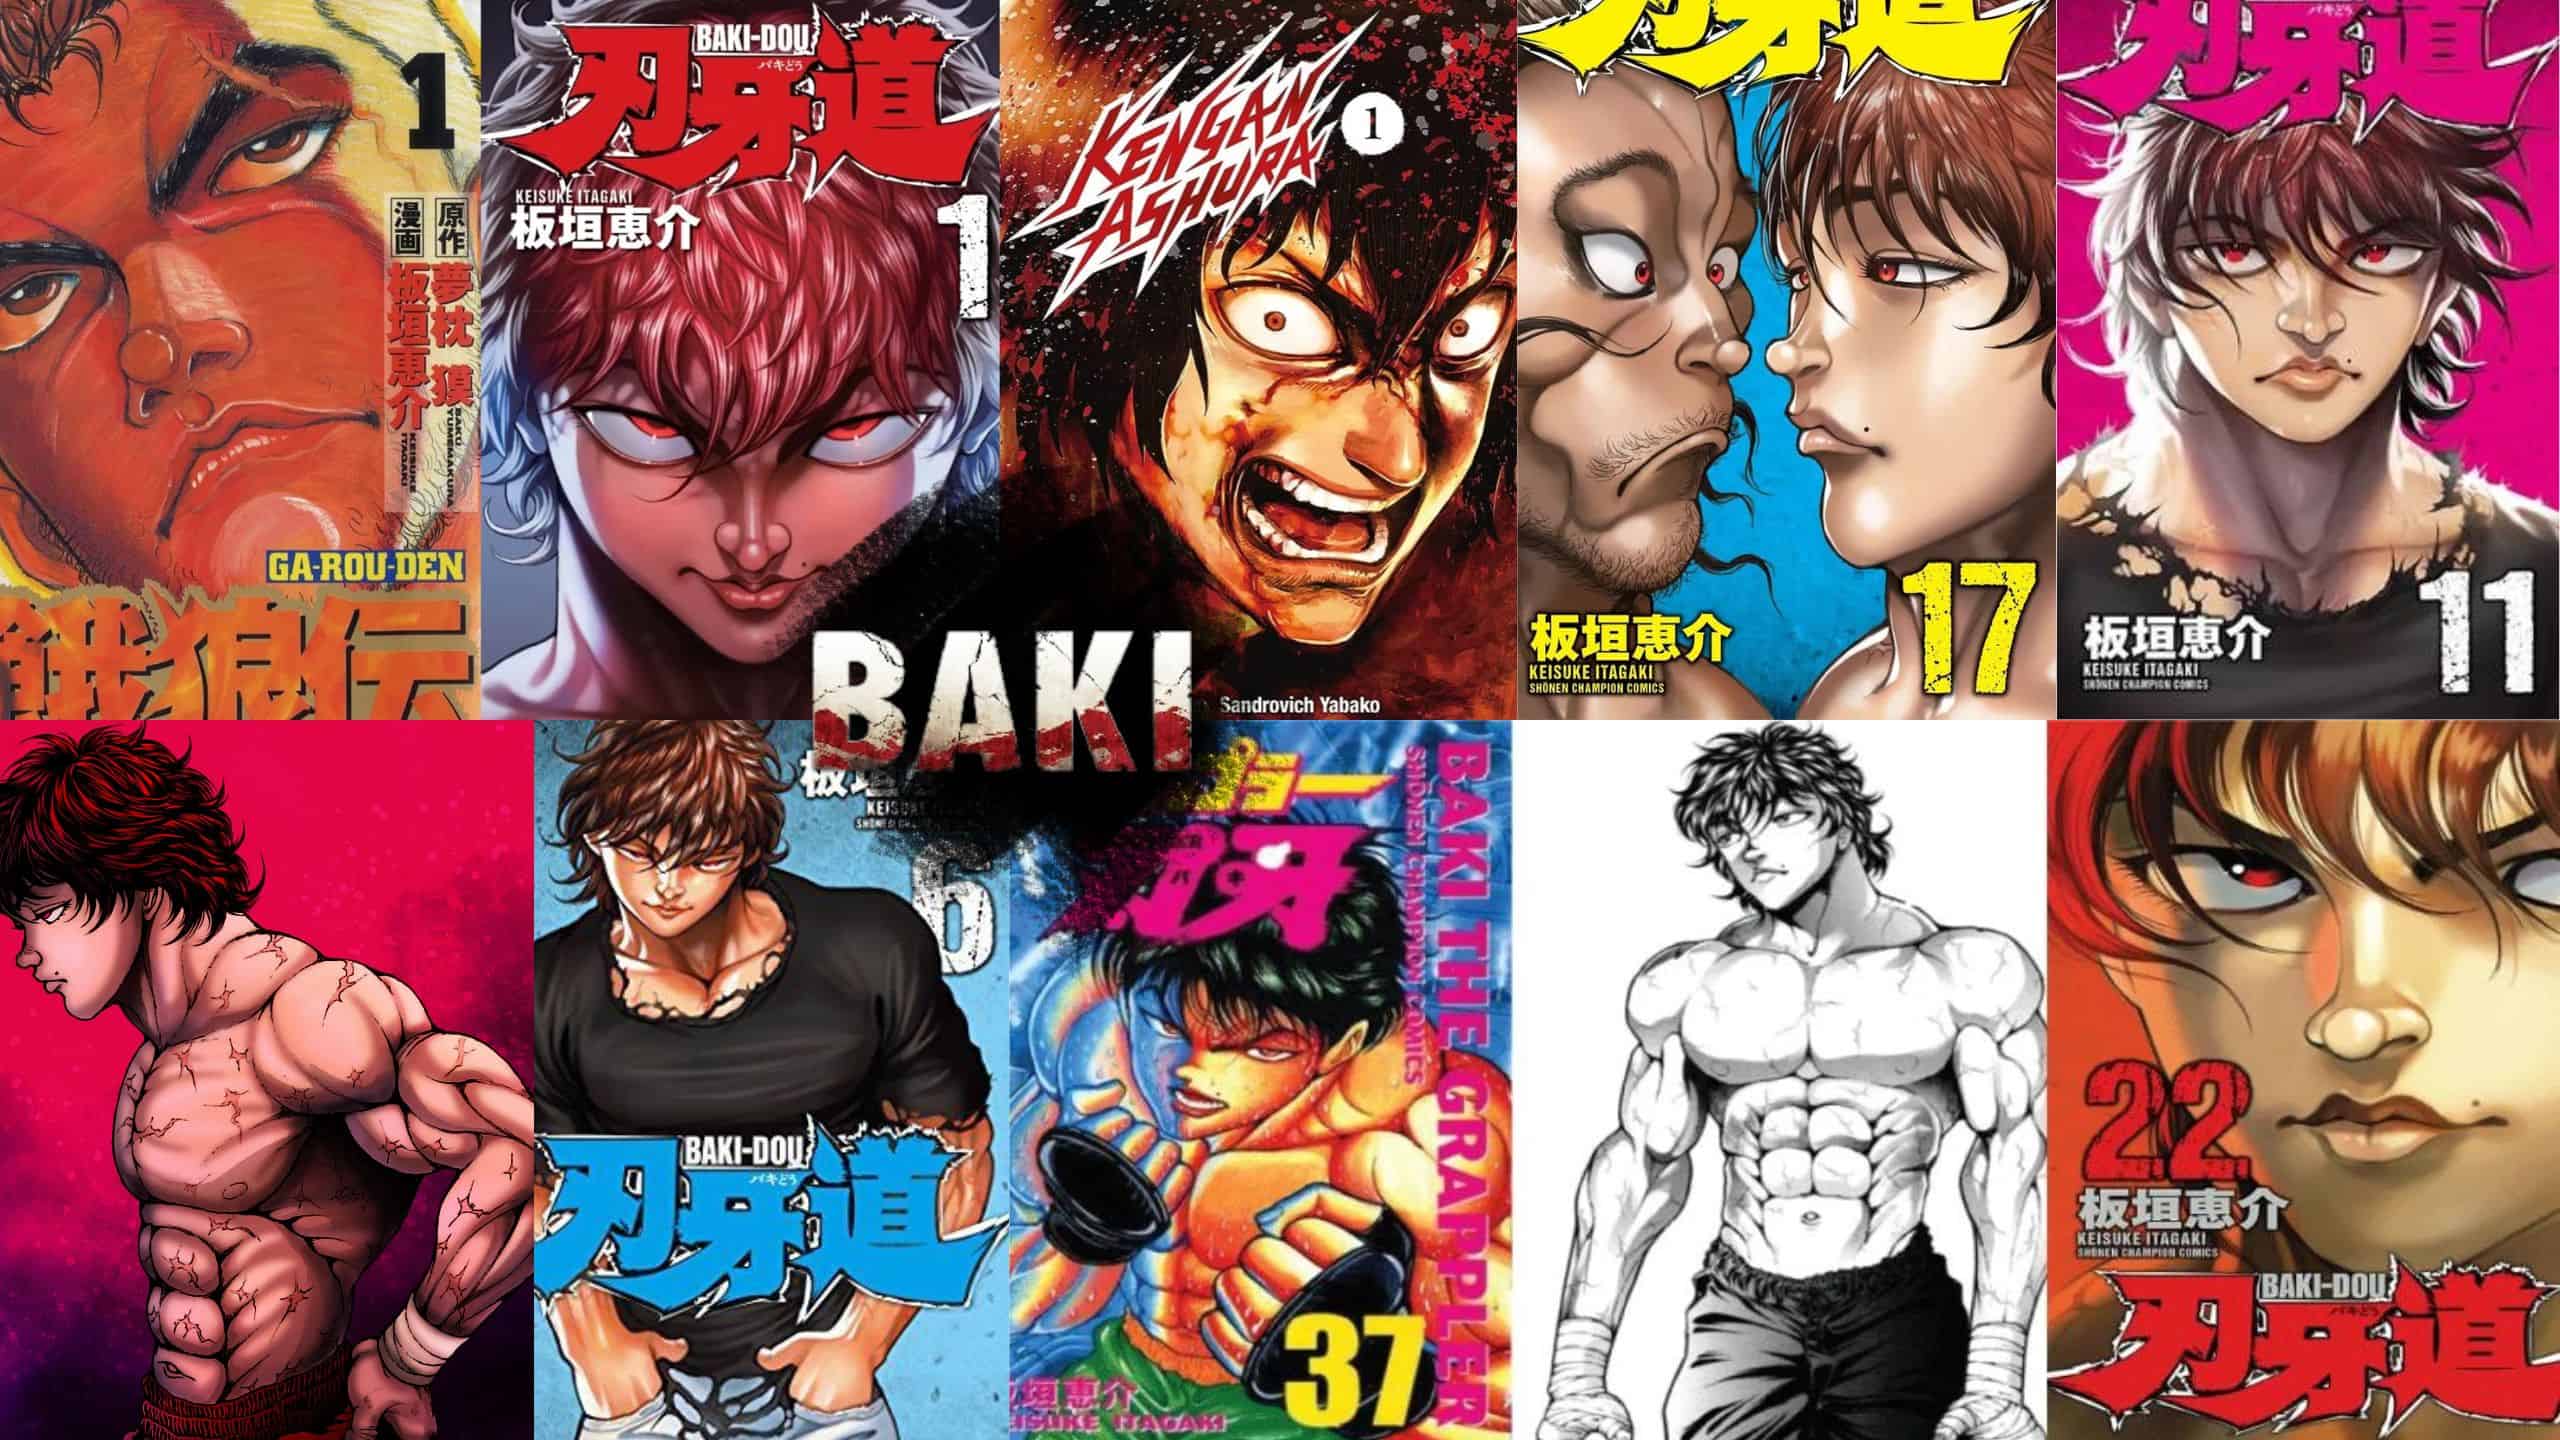 Is The Baki Manga Finished?